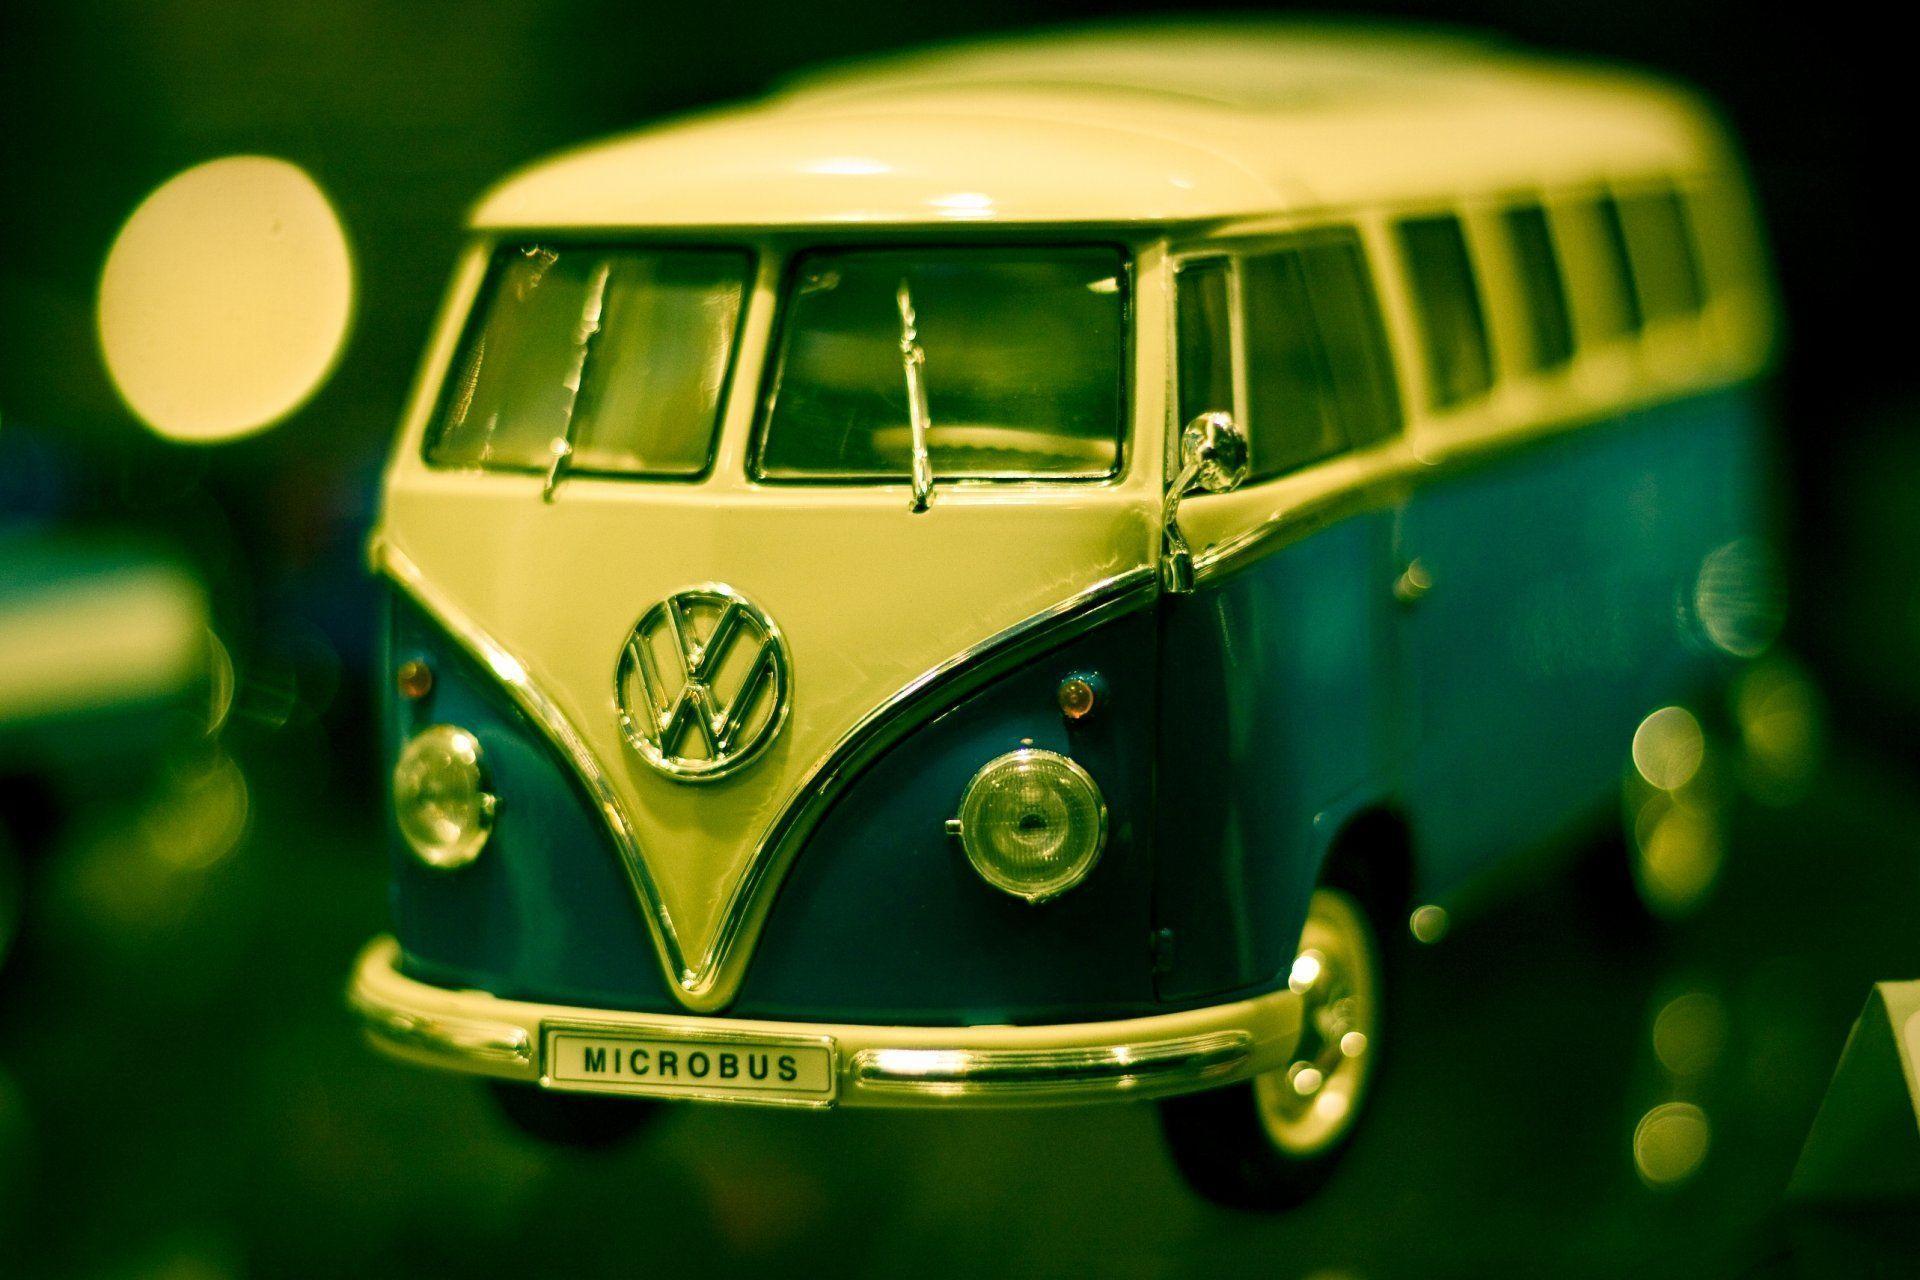 machine toys minivan volkswagen transporter photo close up